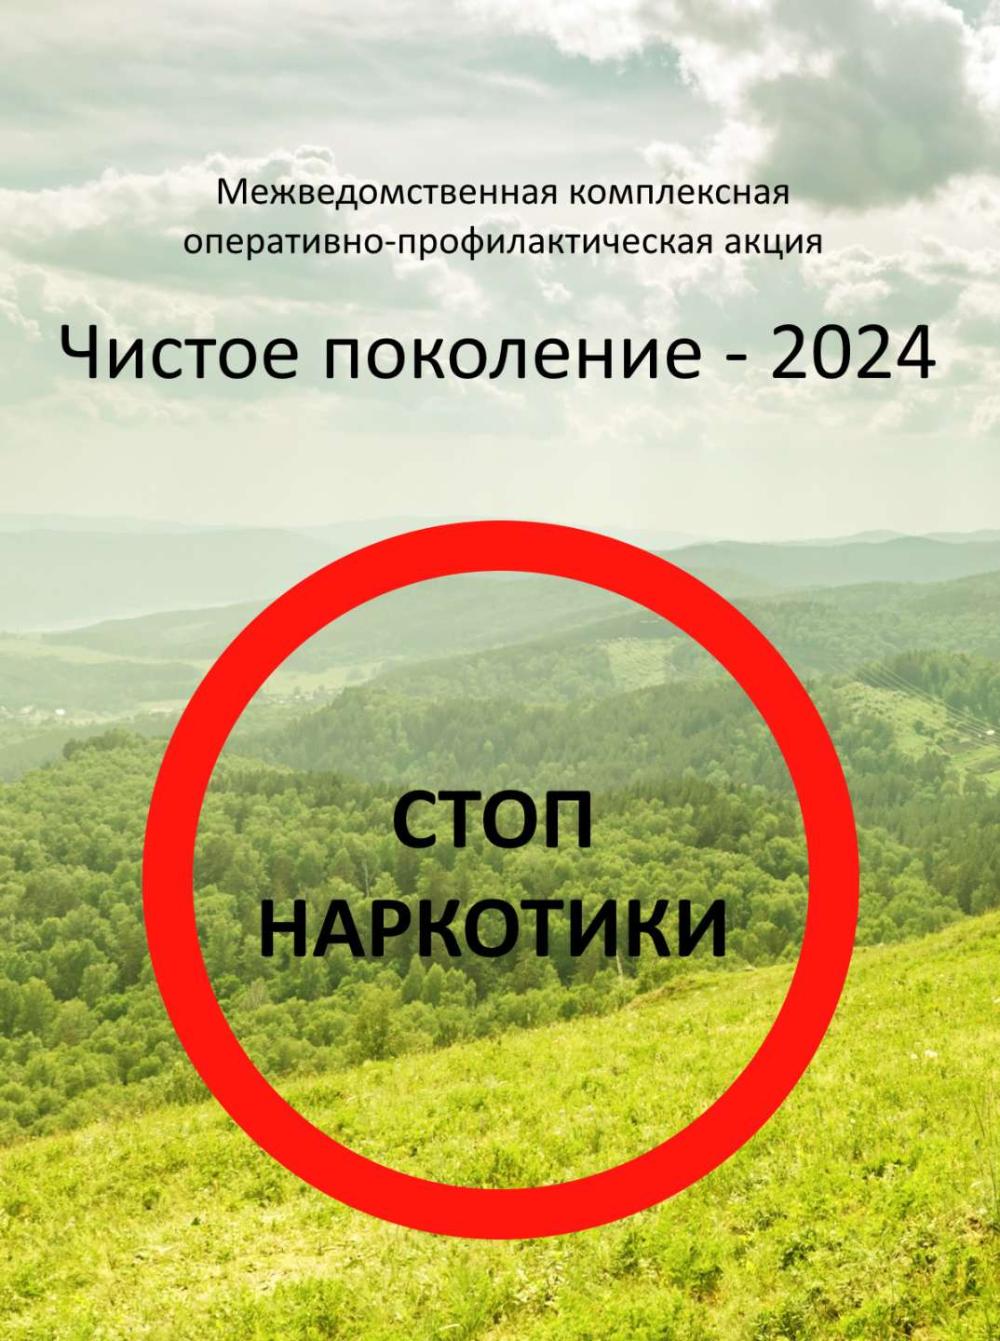 Акция "Чистое поколение - 2024"